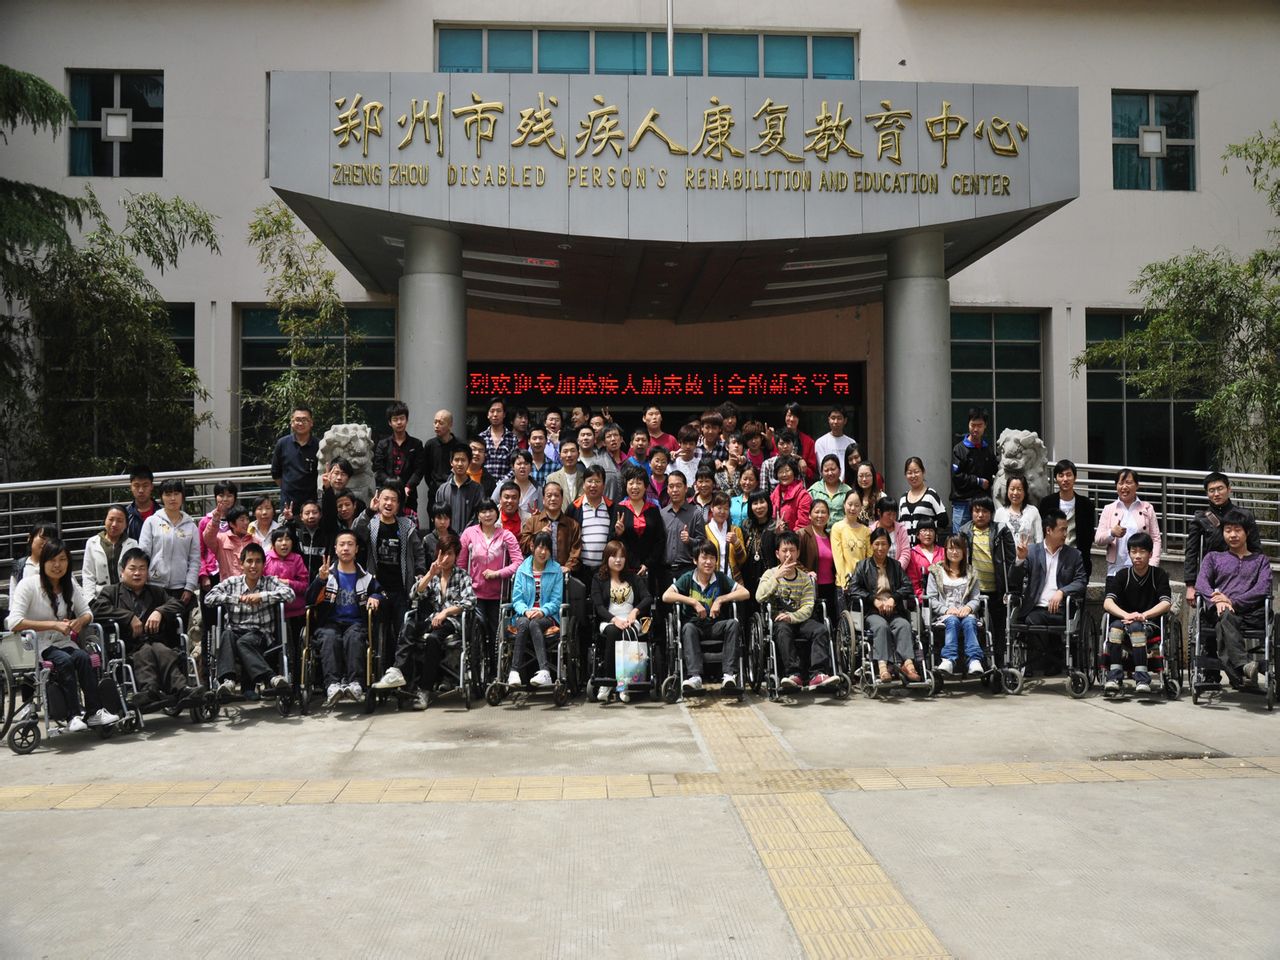 鄭州市殘疾人康復教育中心